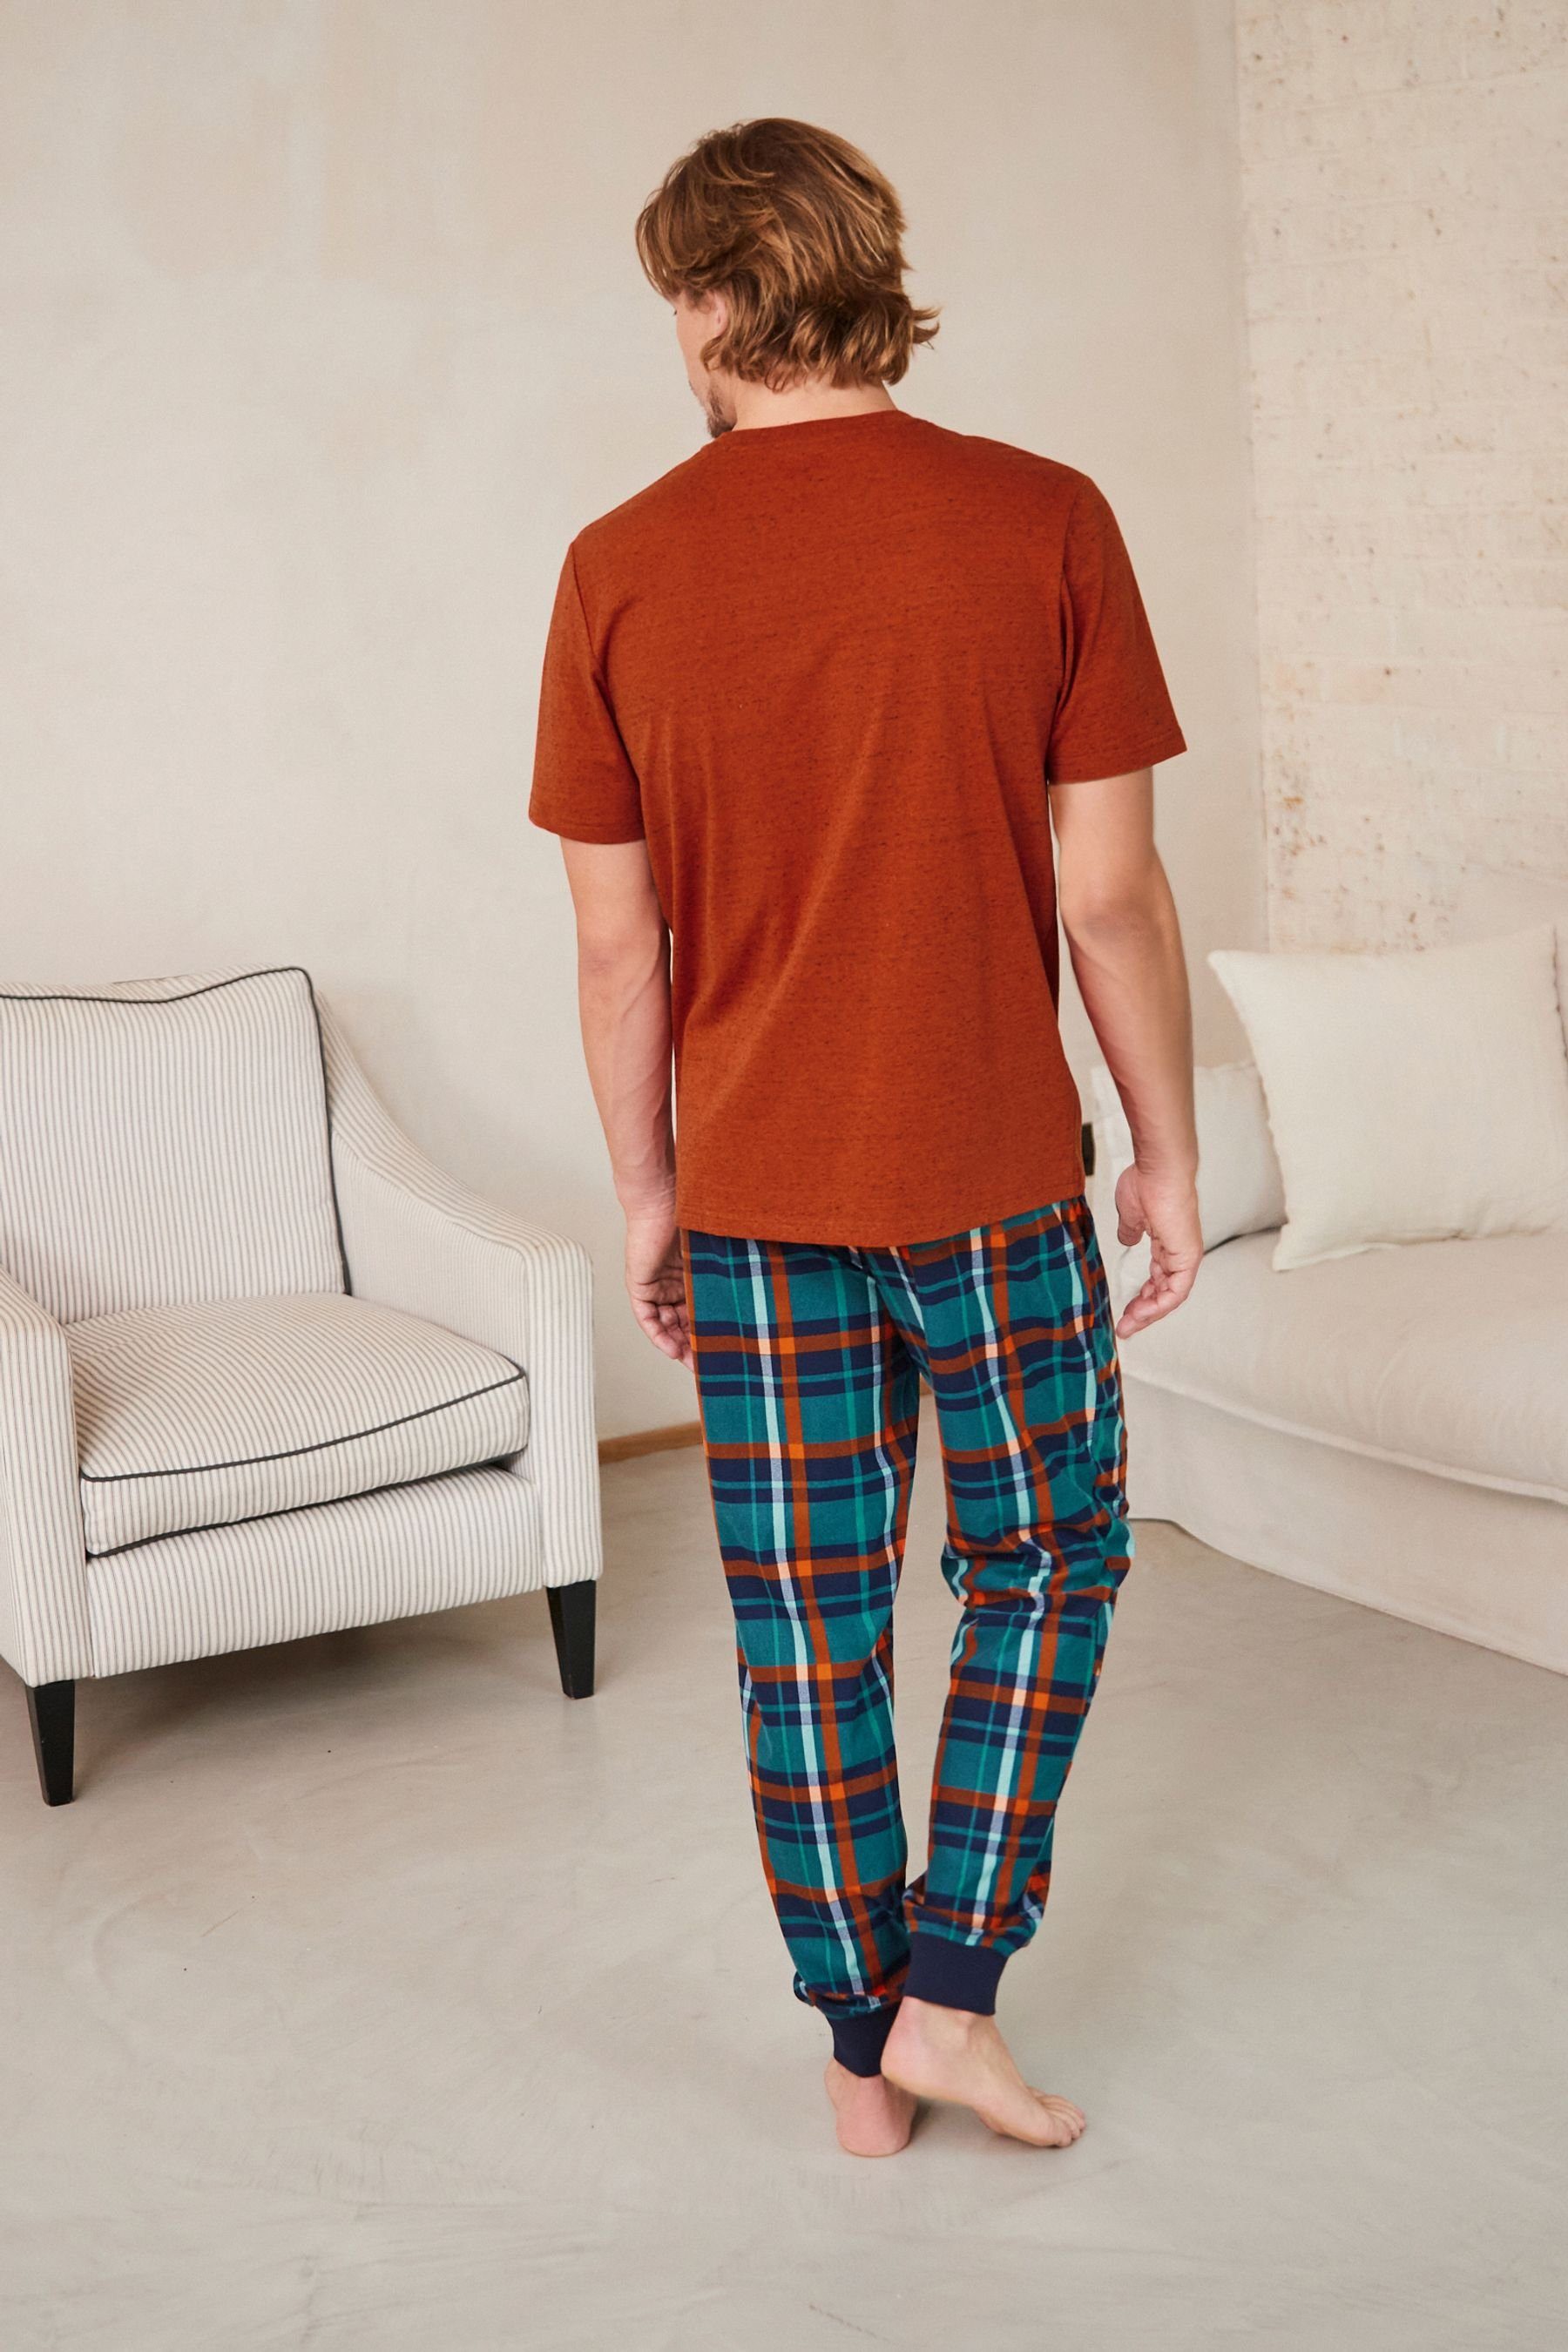 Check mit (2 Kuscheliger Schlafanzug Next tlg) Pyjama Orange/Green MotionFlex Bündchen